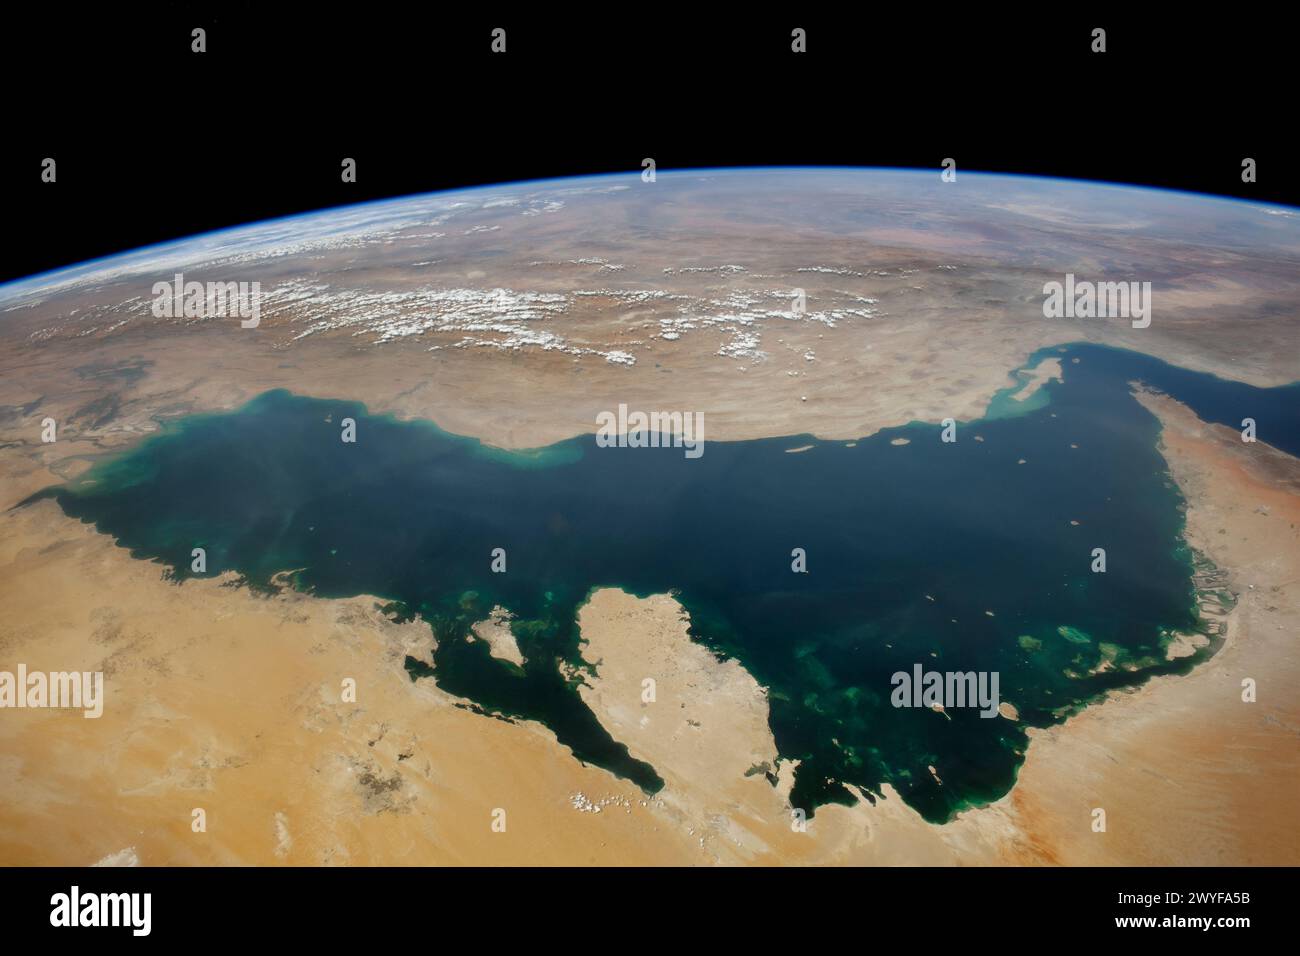 Der Persische Golf vom Weltall aus gesehen. Elemente dieses Bildes stammen von der NASA. Stockfoto